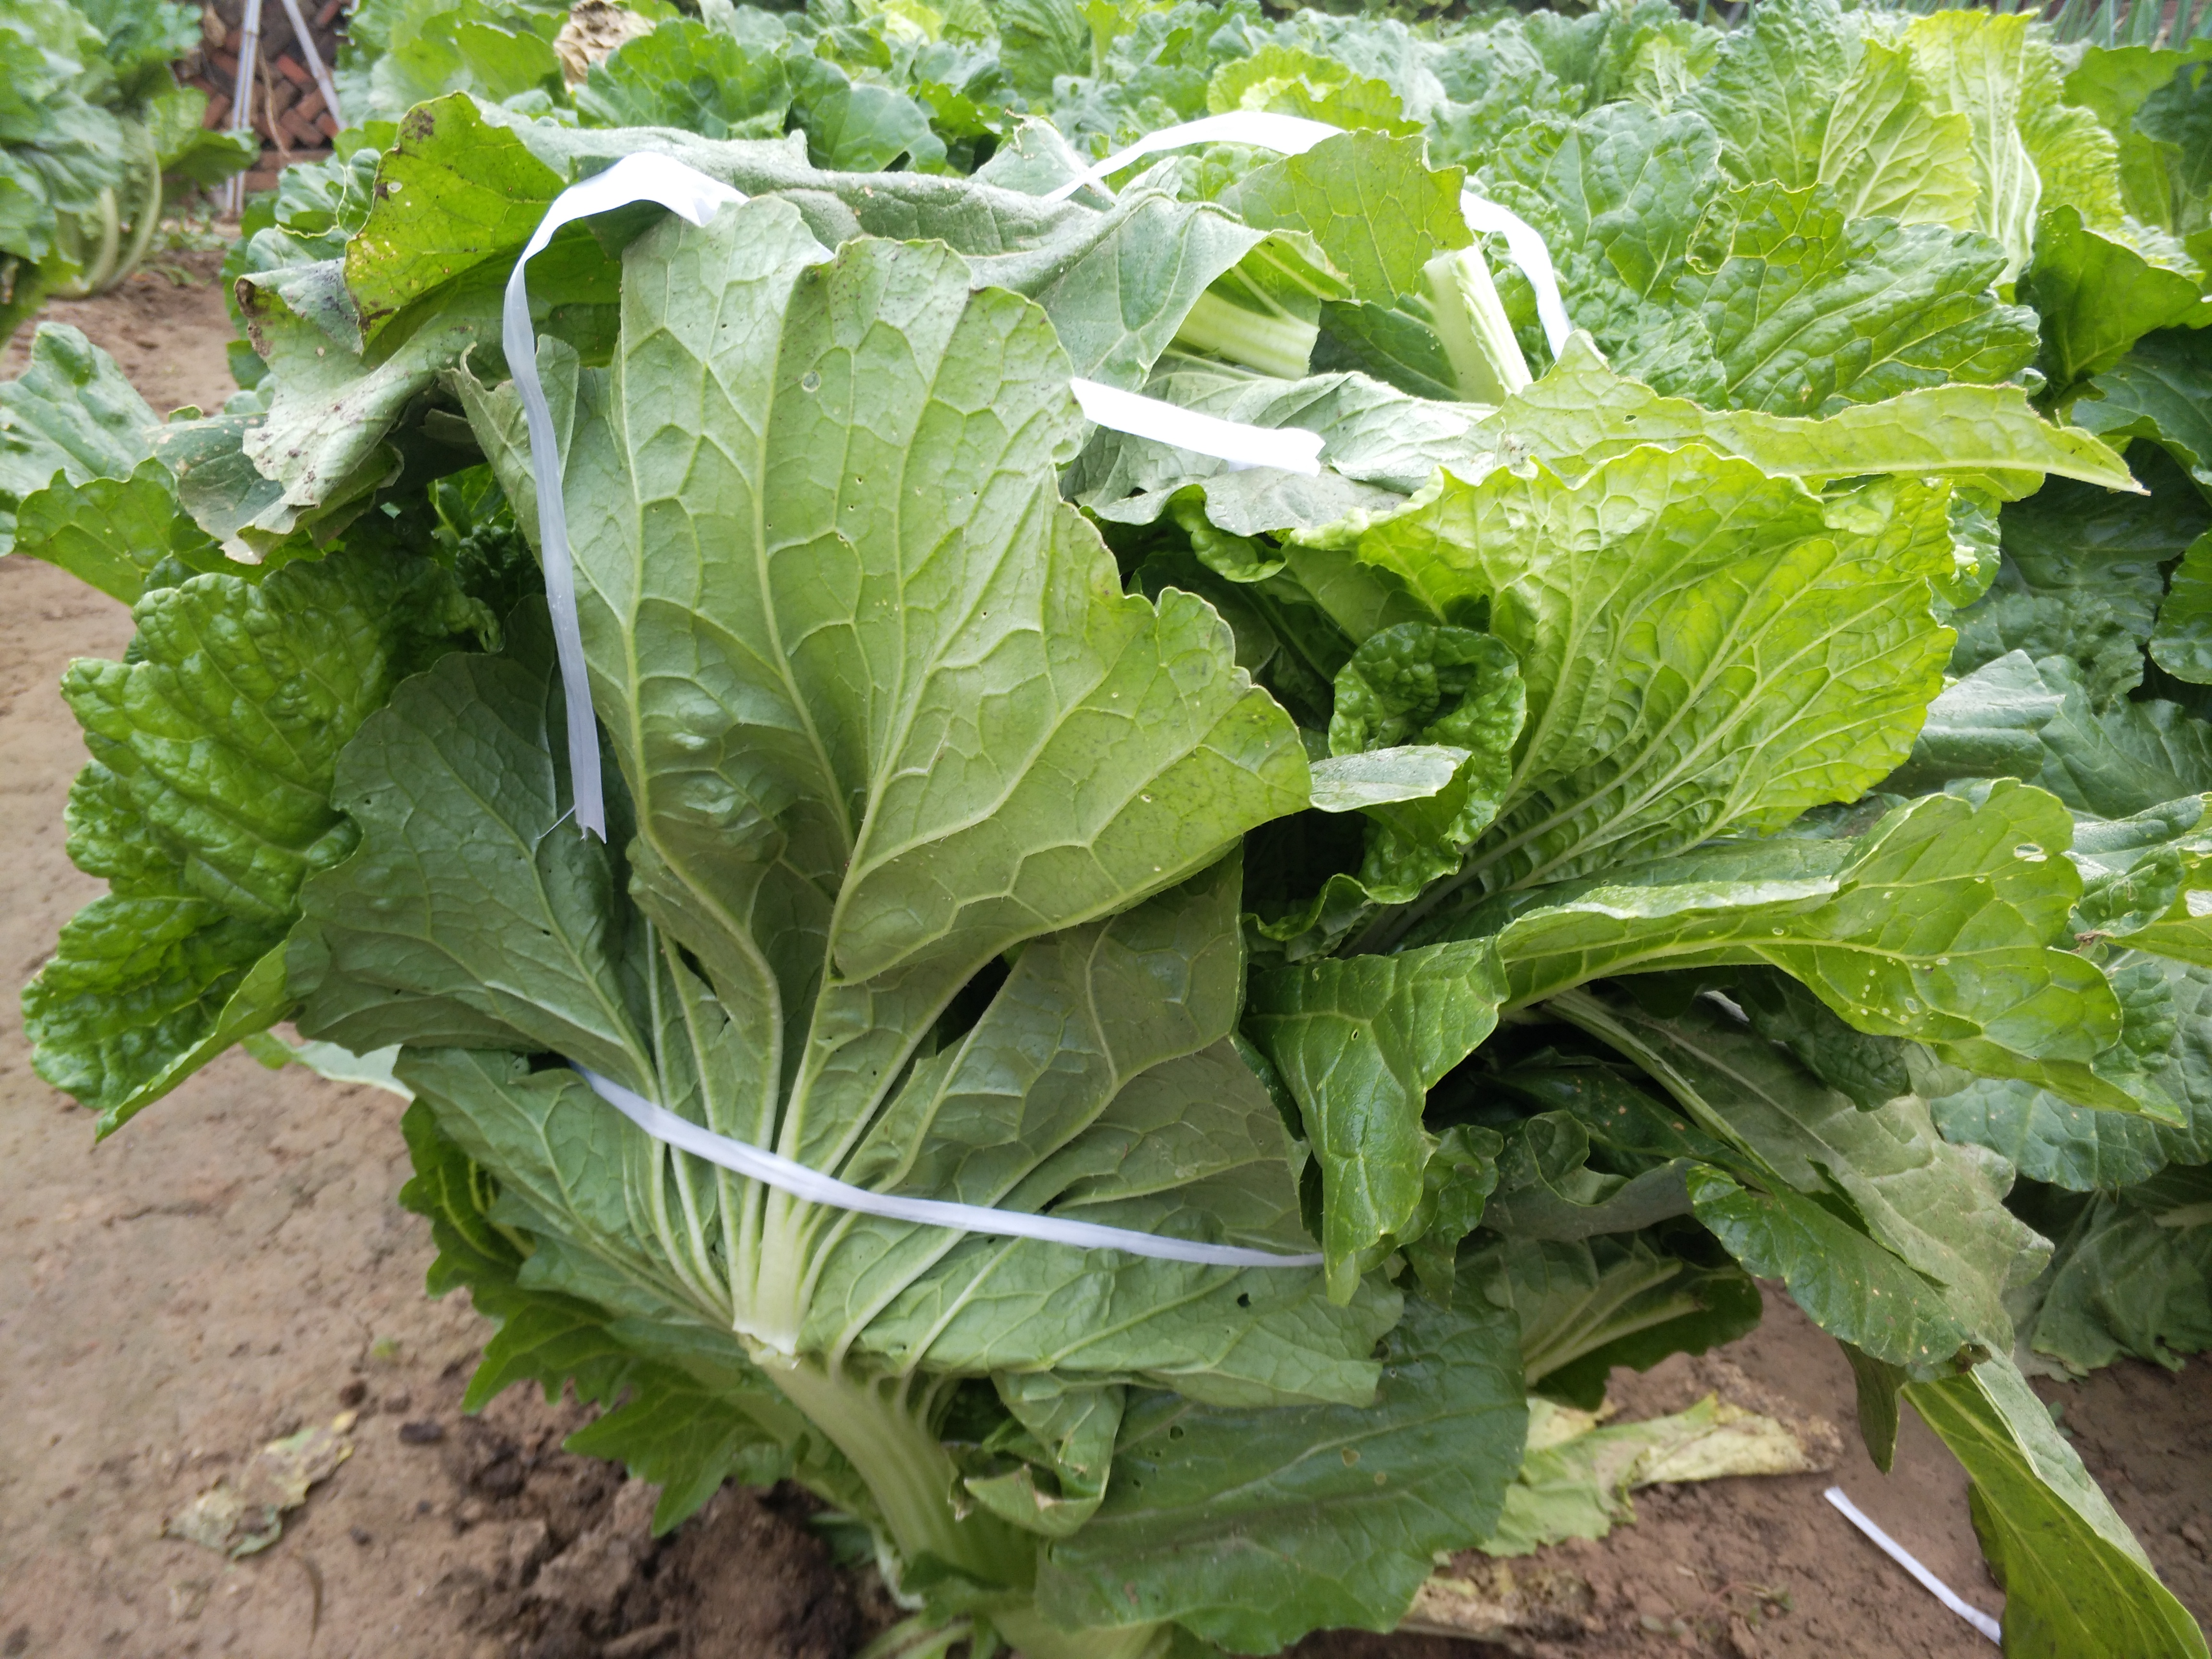 大白菜霜降后如何管理 霜冻对大白菜会有哪些影响 什么时候收获 植保技术 191农资人 农技社区服务平台